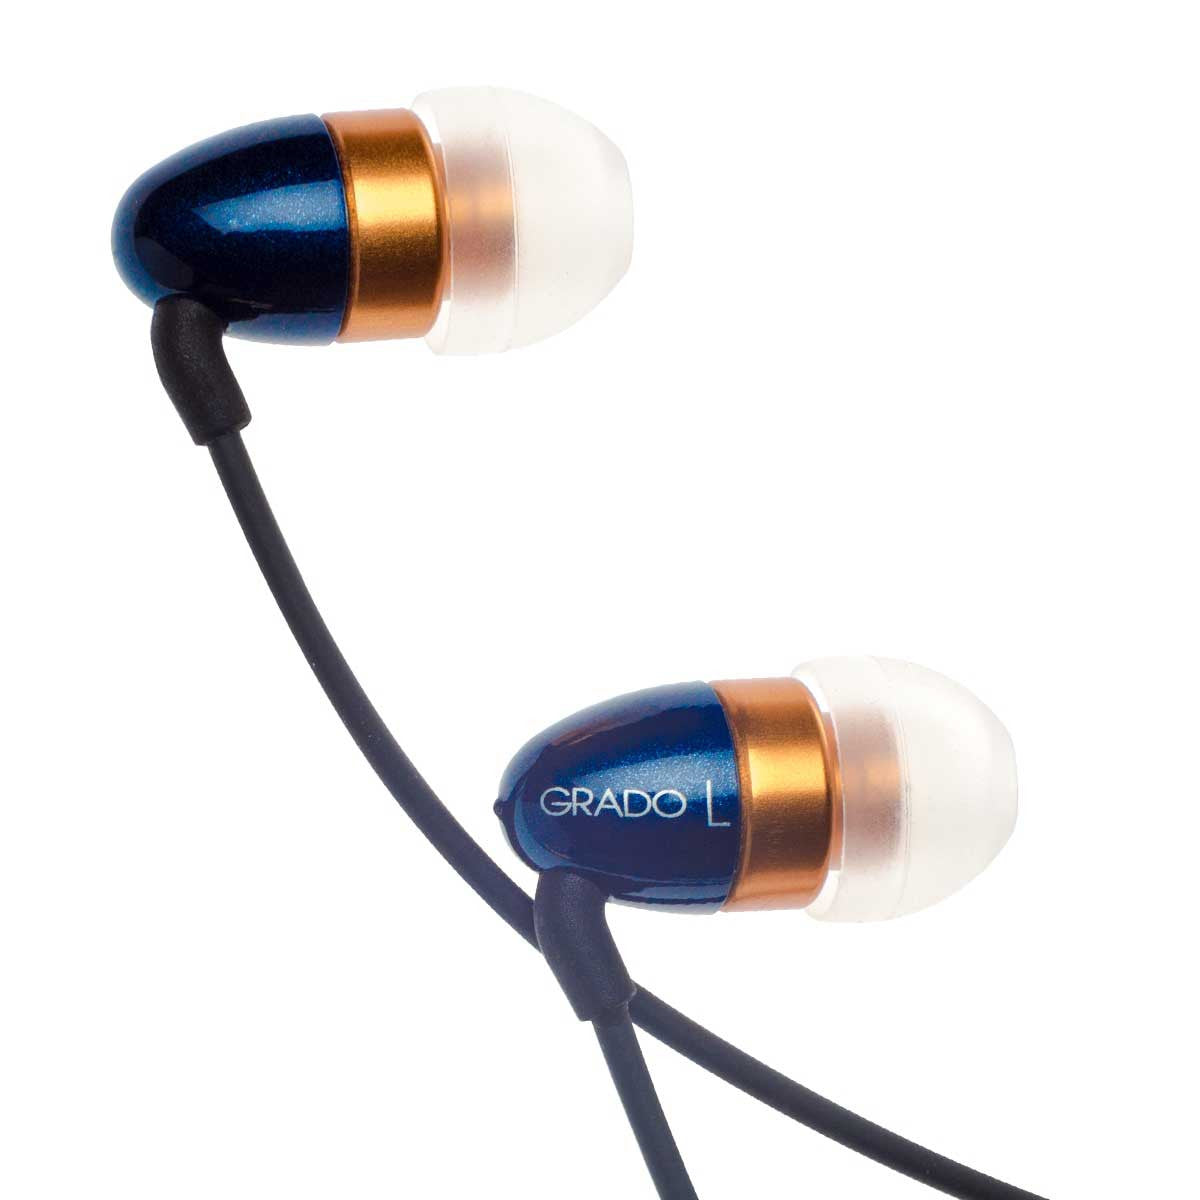 Grado labs GR8e In Ear Headphones